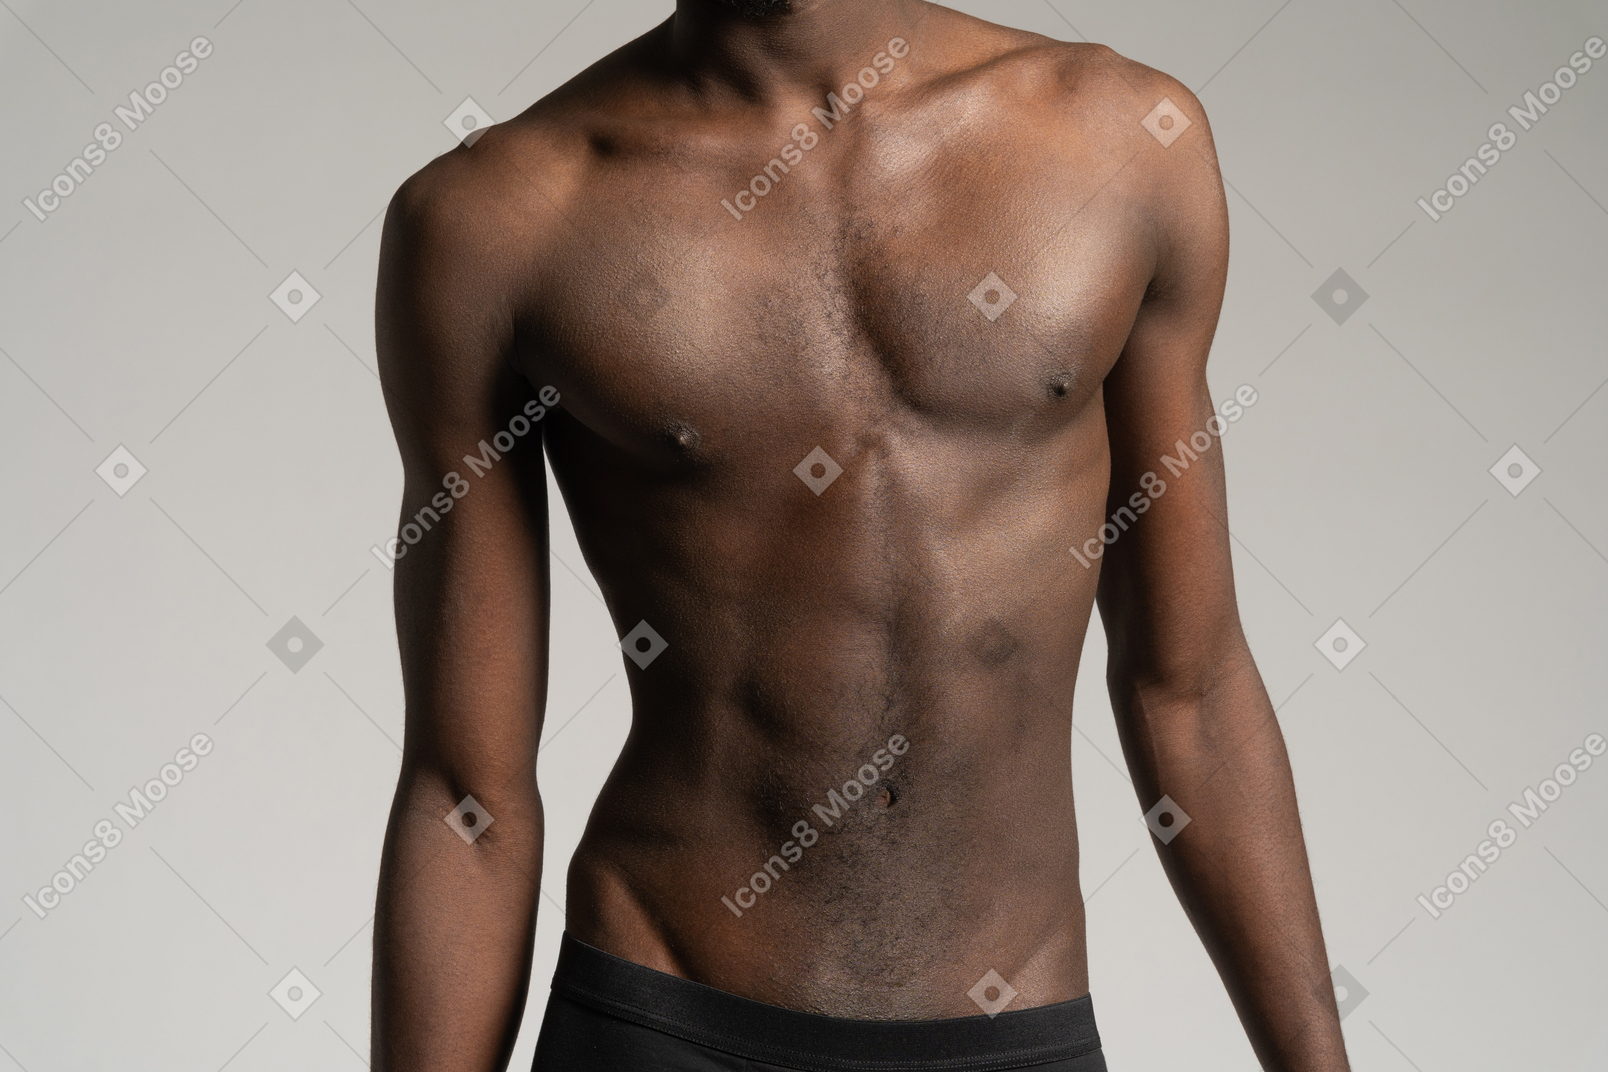 Tilted torso of man